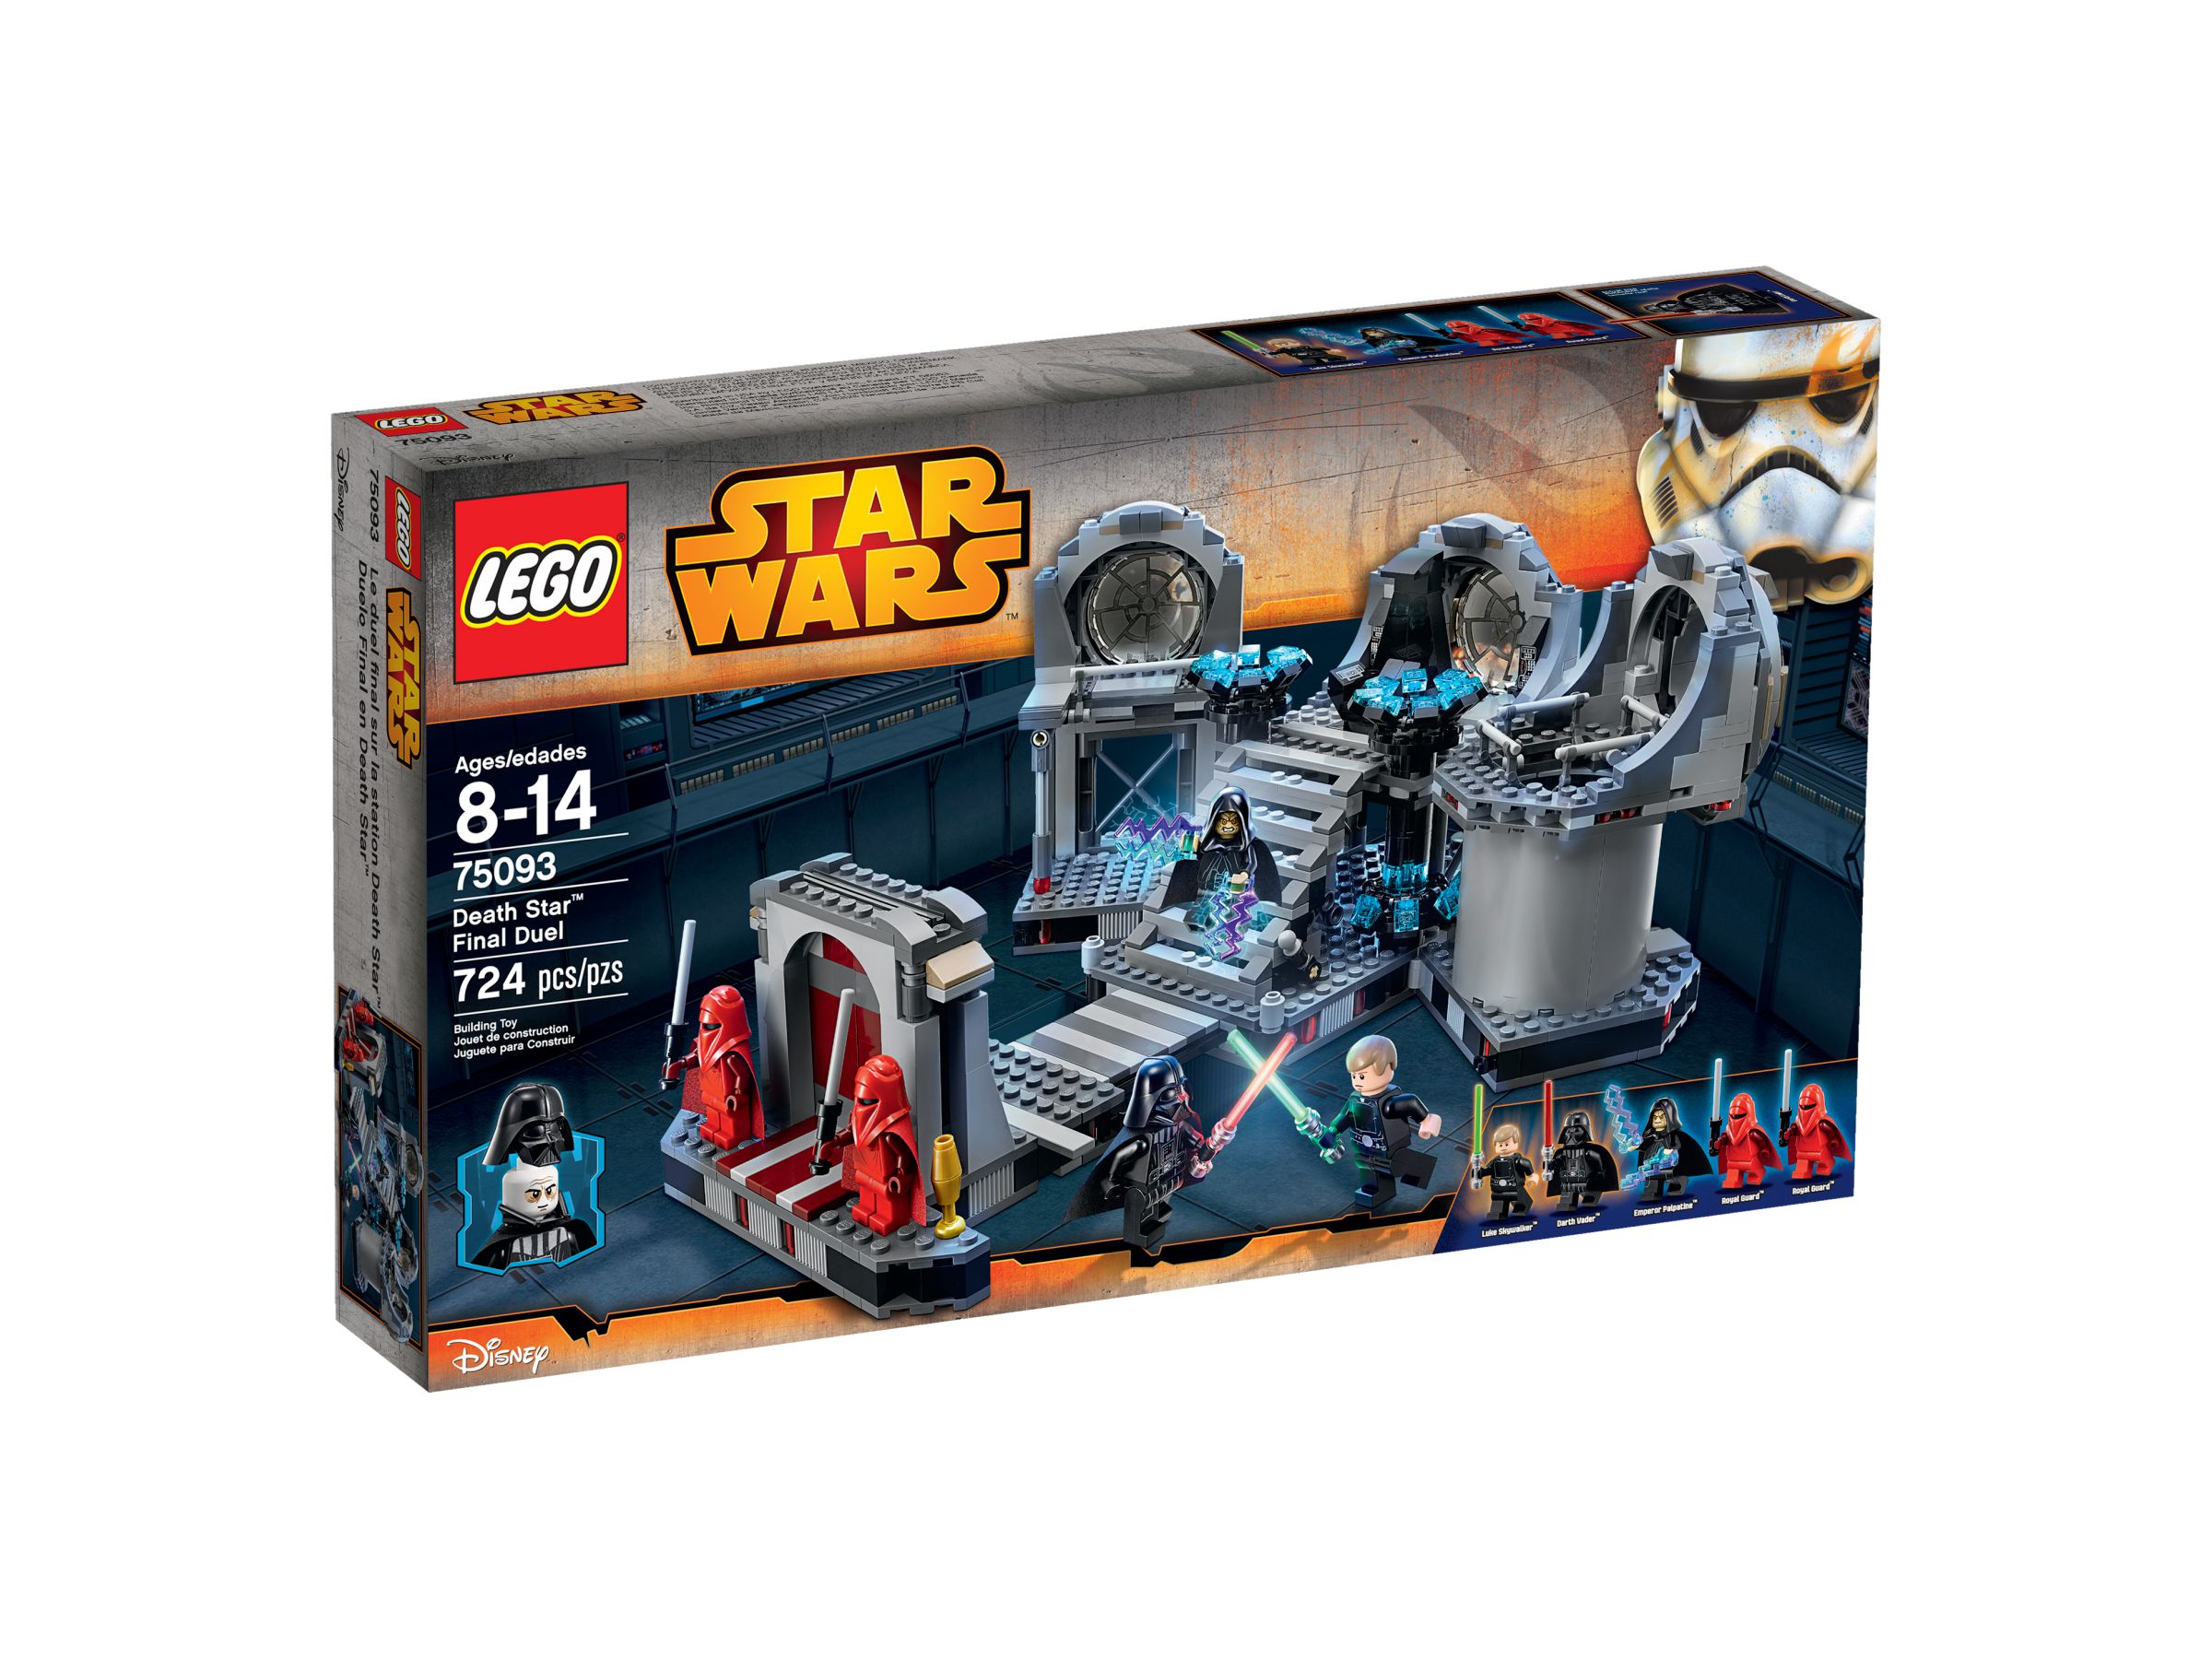 LEGO Star Wars 75093 Death Star™ Final Duel LEGO_75093_alt1.jpg